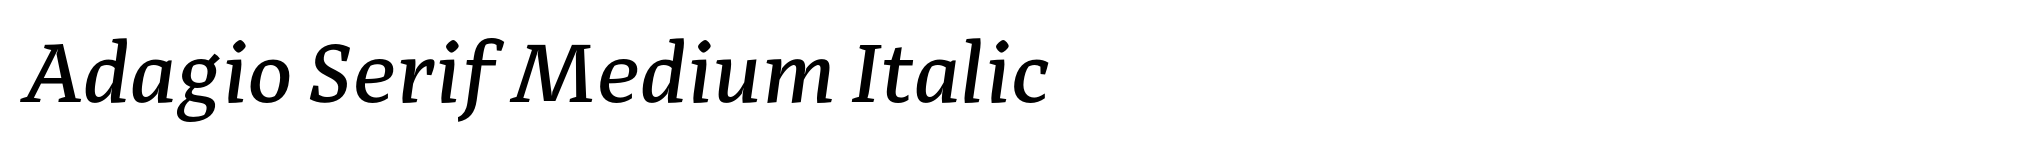 Adagio Serif Medium Italic image